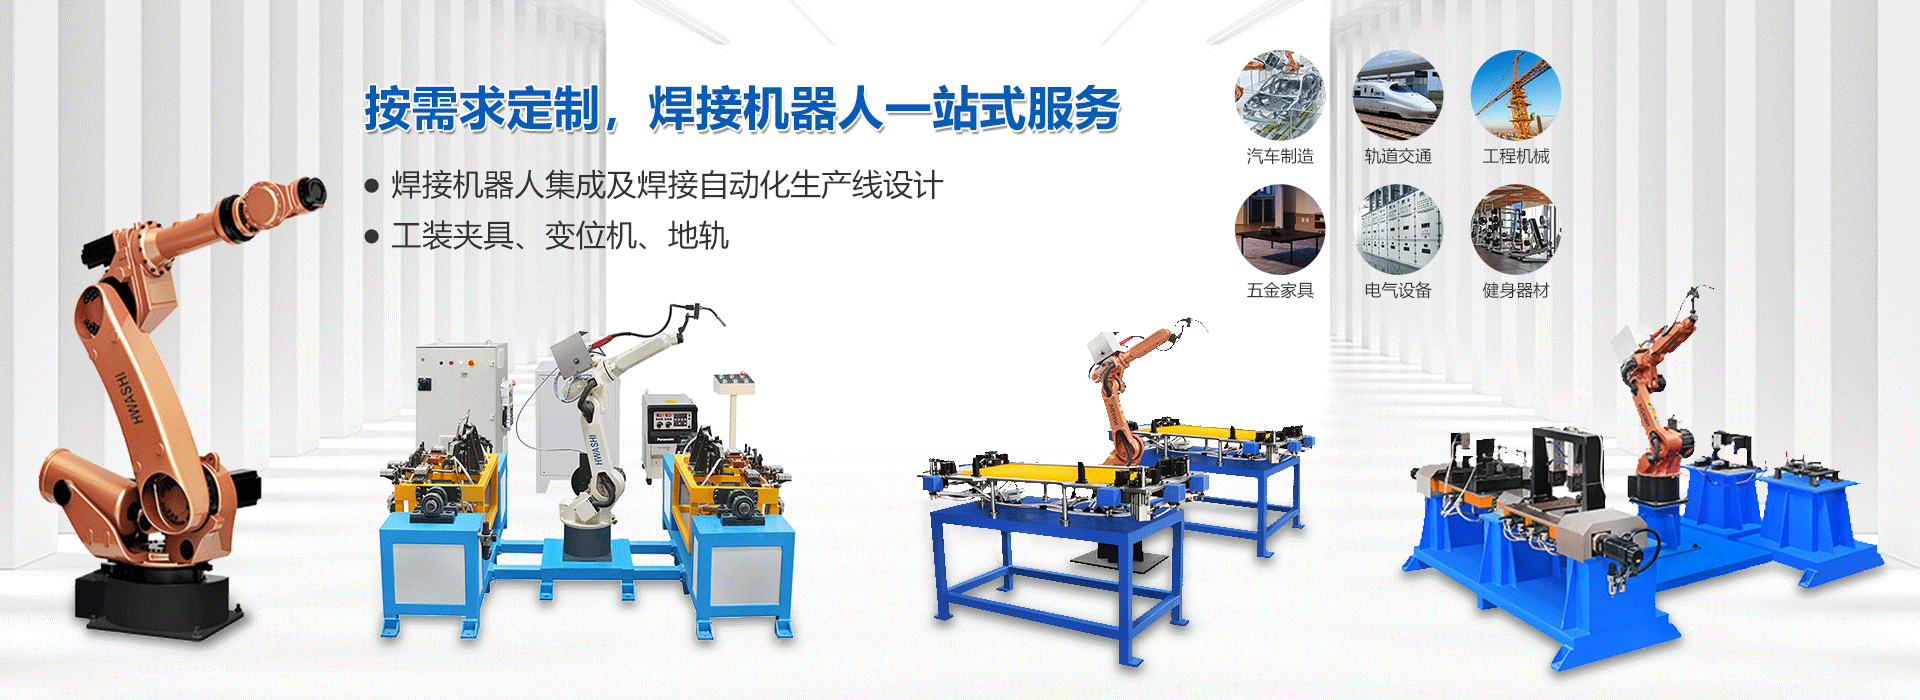 焊接机器人_焊接机器人厂家-广东华士科技股份有限公司